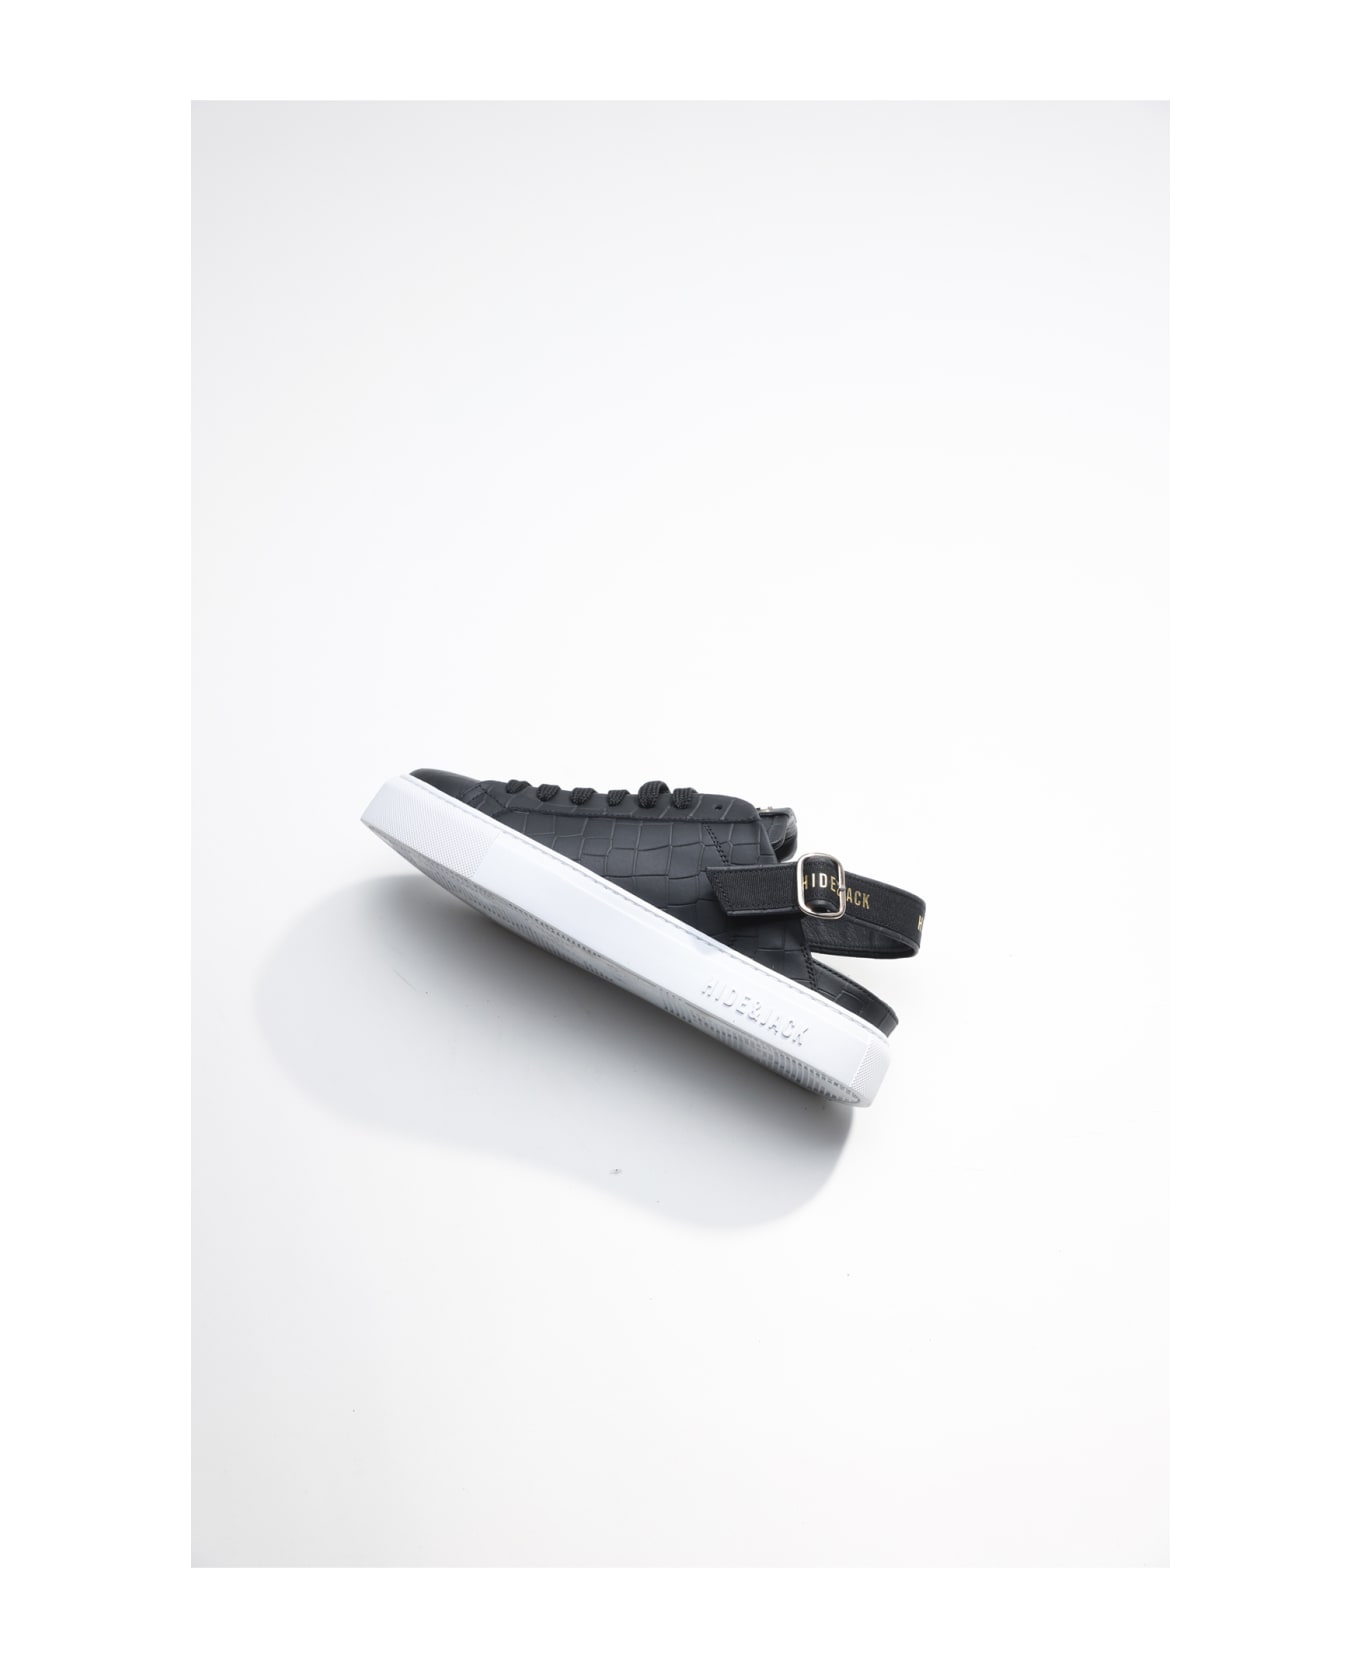 Hide&Jack Low Top Sneaker - Sabot Black